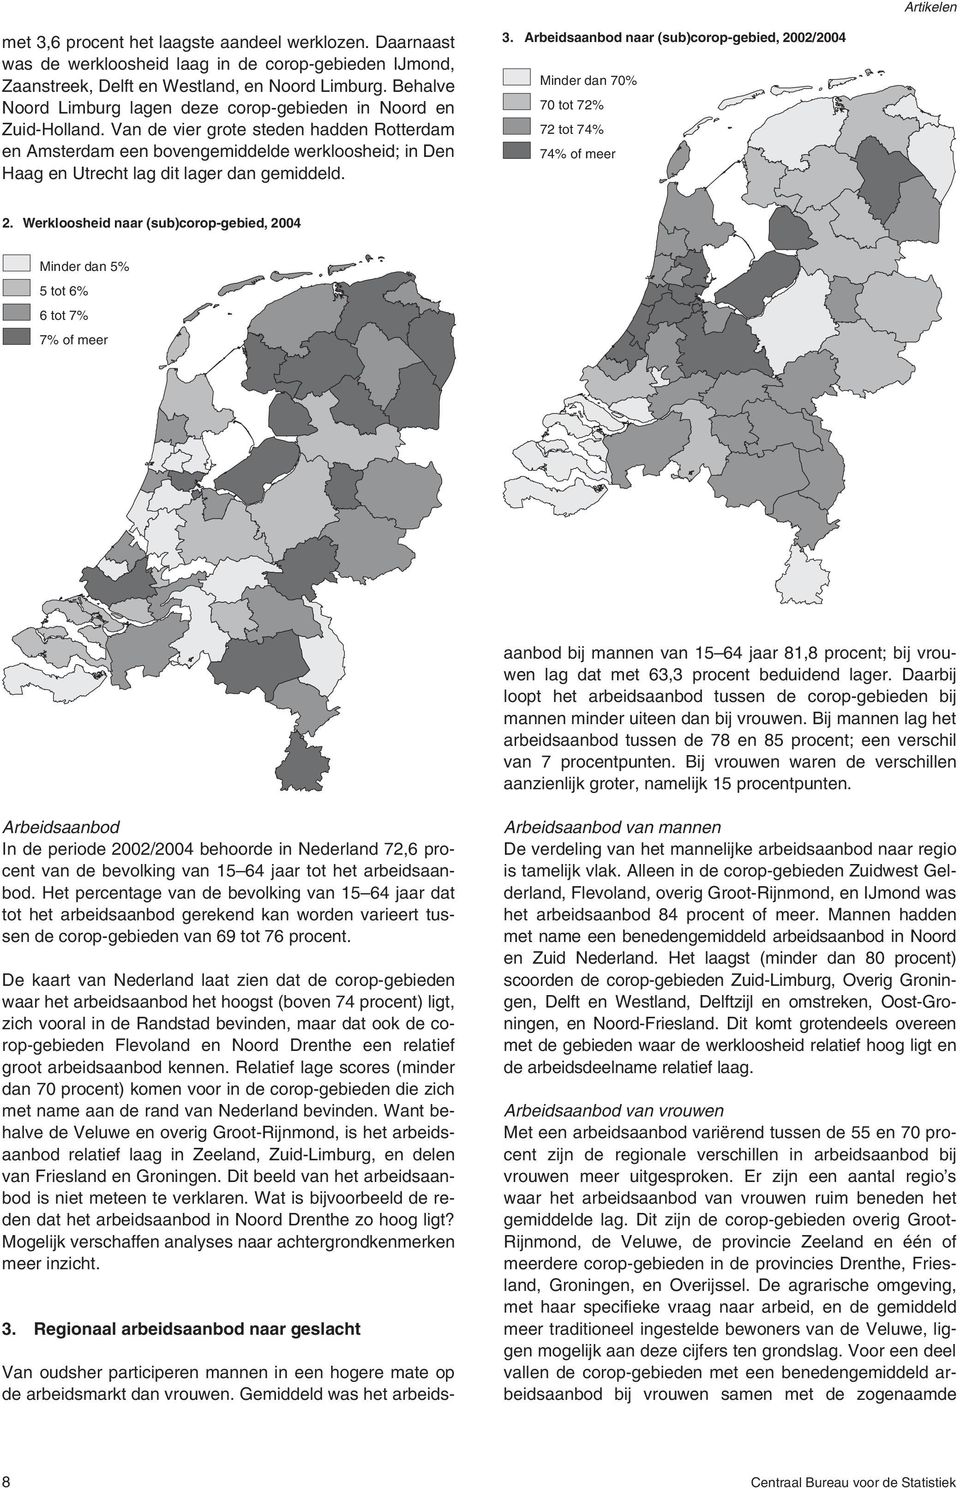 Van de vier grote steden hadden Rotterdam en Amsterdam een bovengemiddelde werkloosheid; in Den Haag en Utrecht lag dit lager dan gemiddeld. 3.